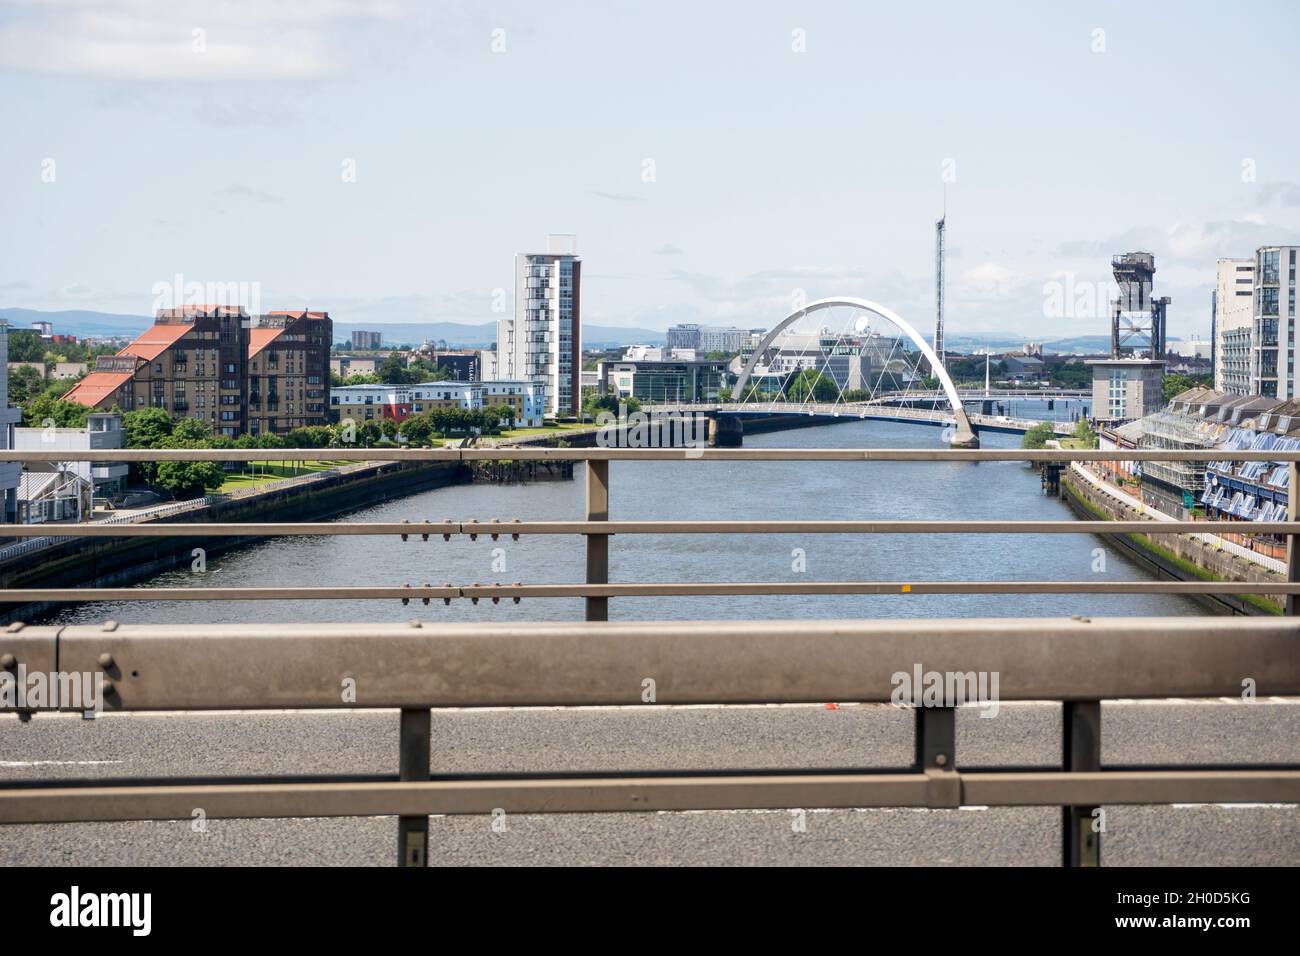 Attraversando il fiume Clyde sull'autostrada M8 a Glasgow attraverso il ponte Kingston. Viaggiando verso nord con vista ad ovest che mostra il Clyde Arc o il Ponte di Swinty. Foto Stock